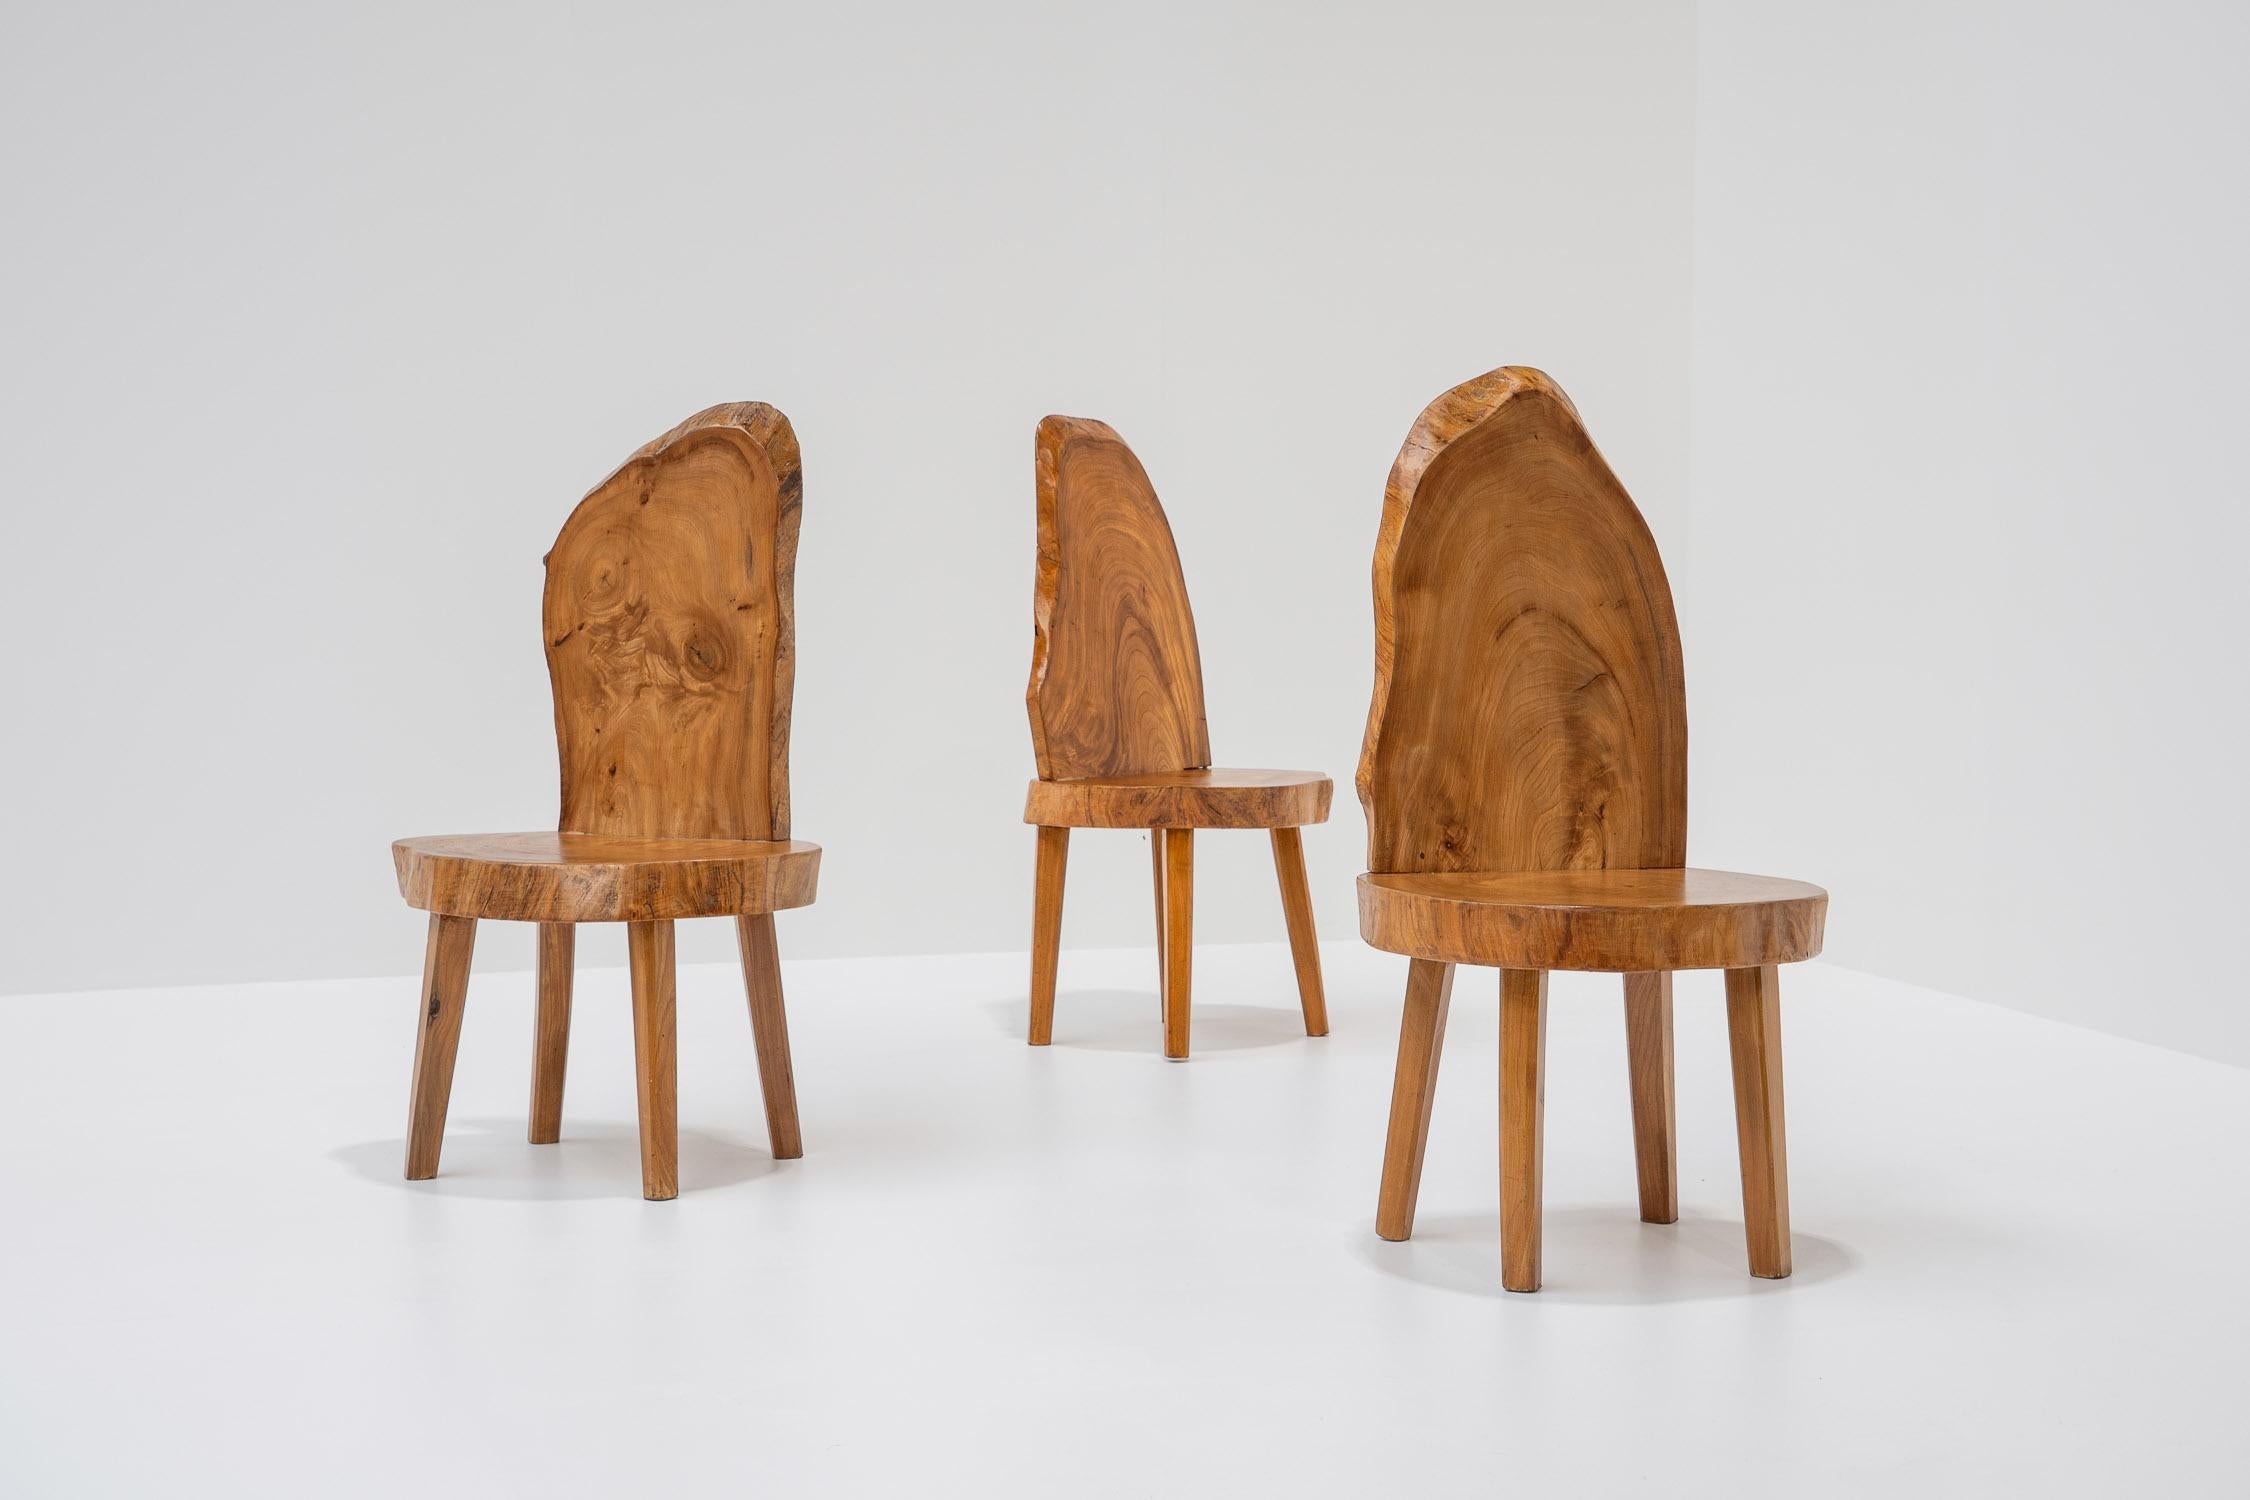 Gefertigt aus massiven Baumstämmen, erzählt jeder Stuhl seine eigene Geschichte. Aufgrund der natürlichen Unebenheiten und der einzigartigen Maserung des Holzes gleicht kein Stuhl dem anderen. Jedes Stück hat seine organische, lebendige Kantenform.